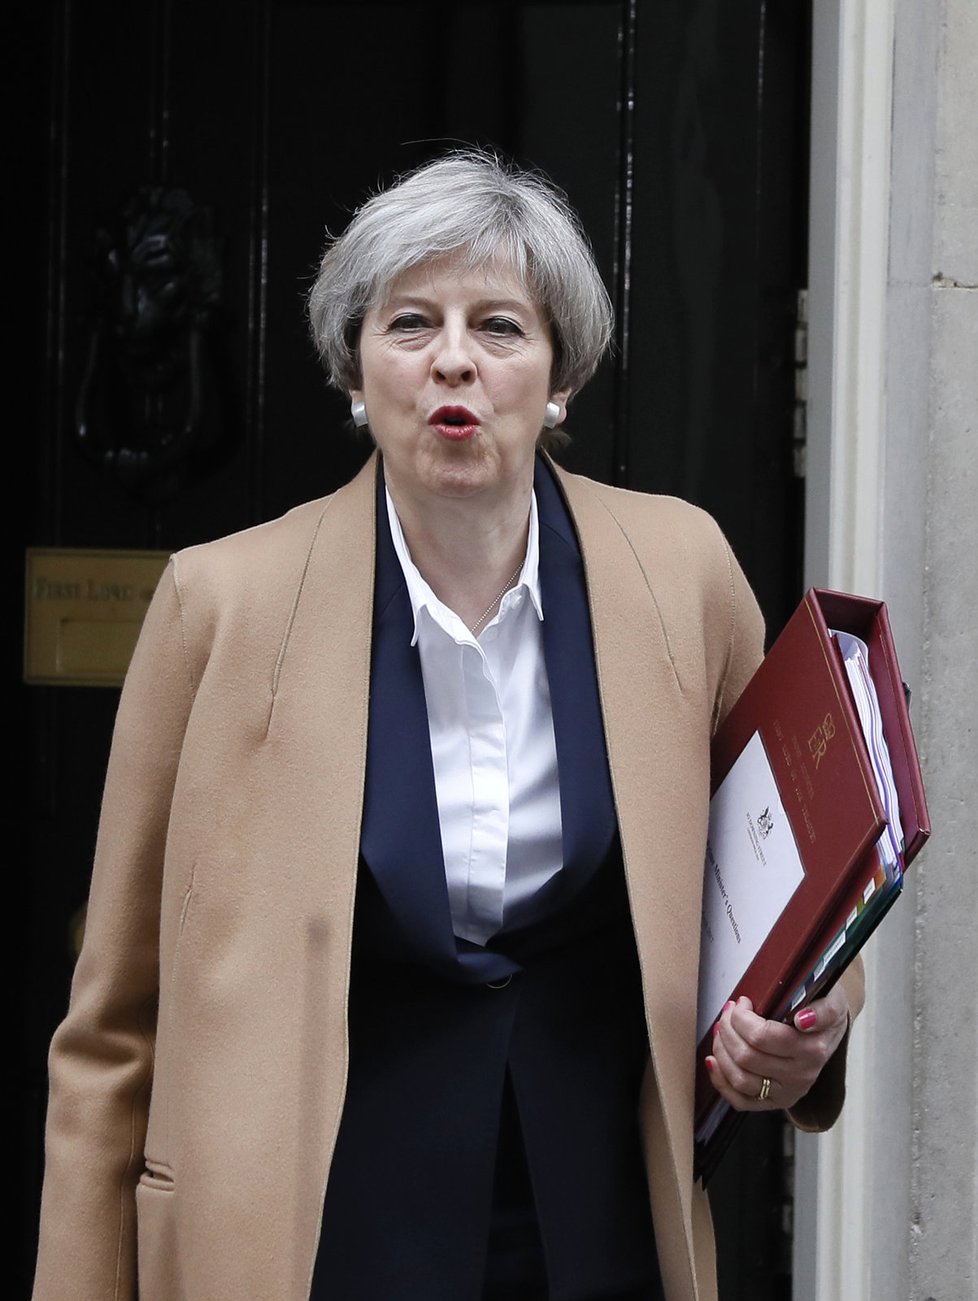 Britská premiérka Theresa Mayová vychází ze svého sídla a odjíždí do sněmovny oznámit, že aktivovala článek 50 lisabonské smlouvy. Oficiálně tak začal brexit